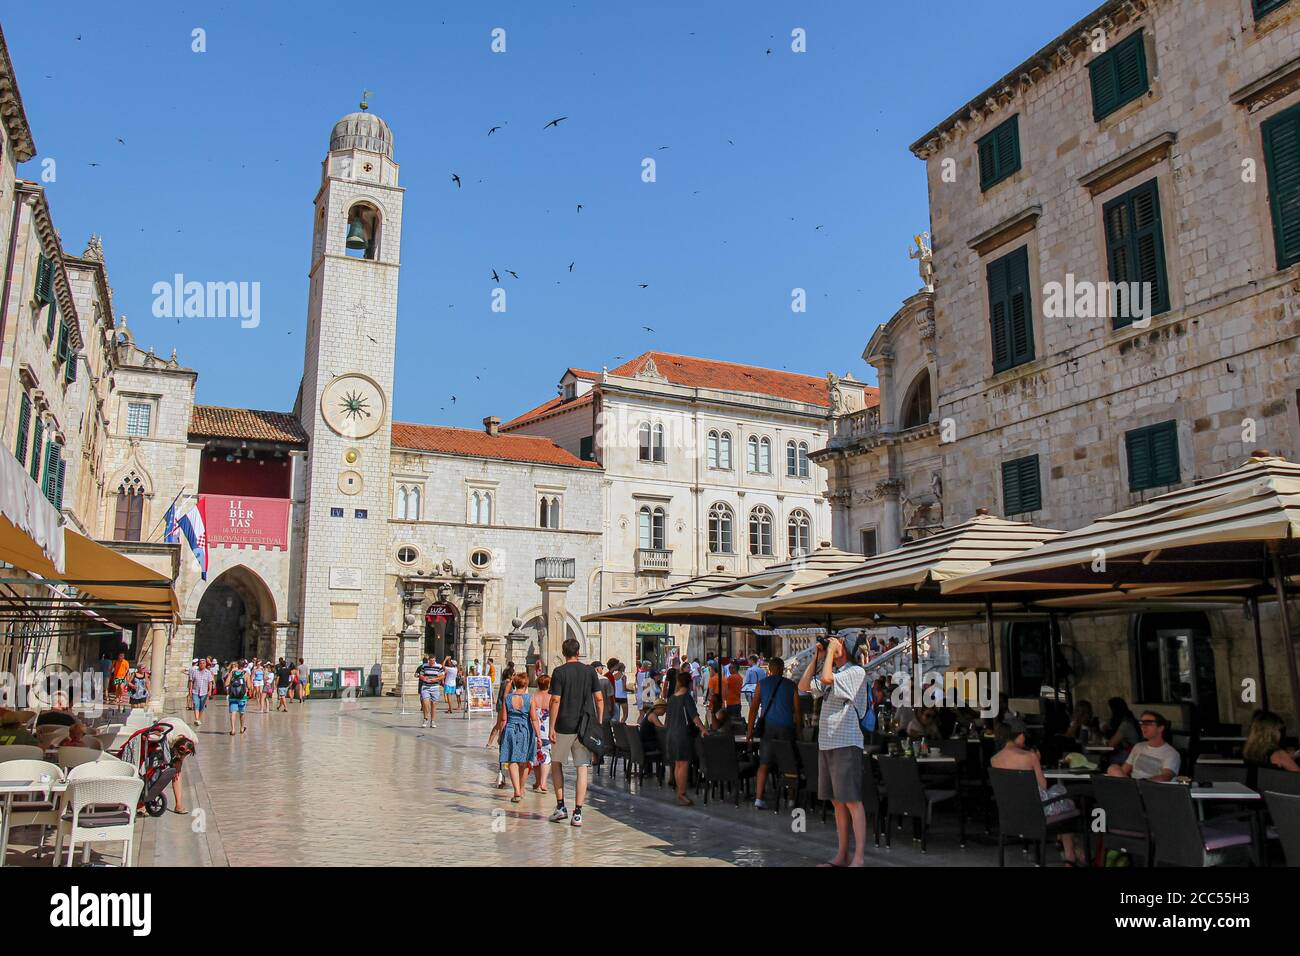 Dubrovnik, Croatie - 15 juillet 2018 : la rue principale de Stradun, le café et la tour de l'horloge dans la vieille ville de Dubrovnik, avec des touristes en été, Croatie Banque D'Images